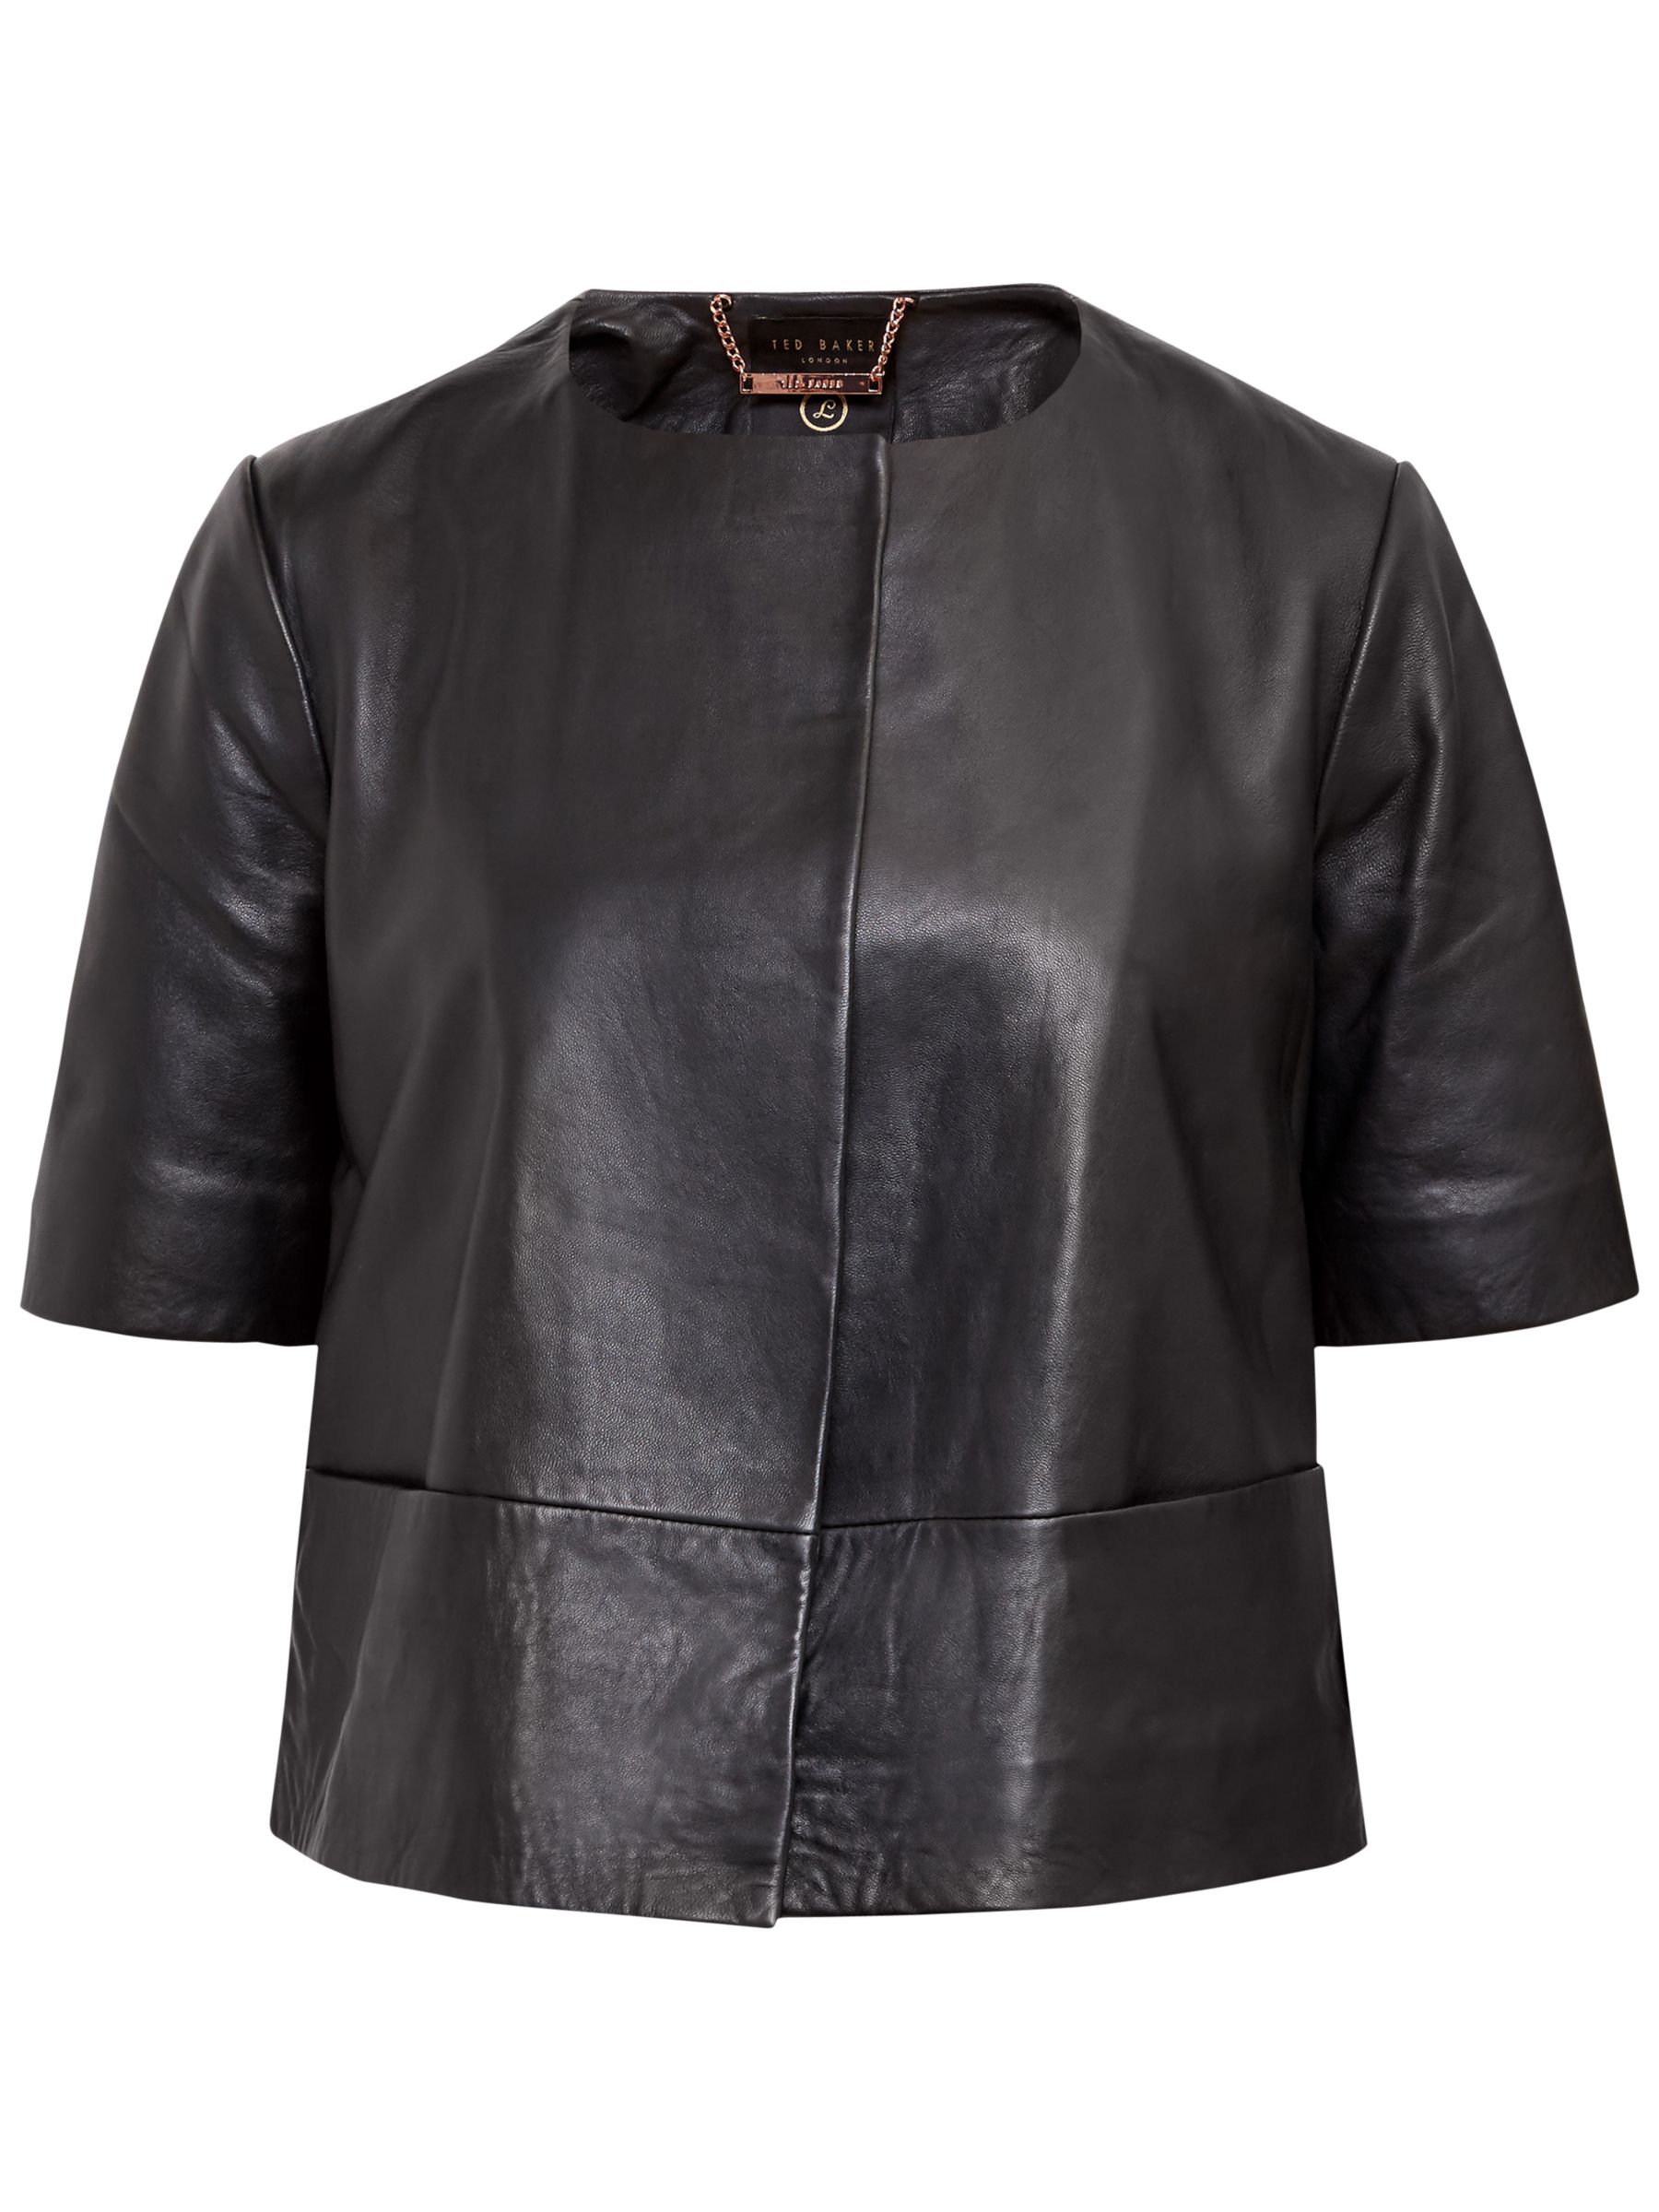 short sleeve black leather jacket